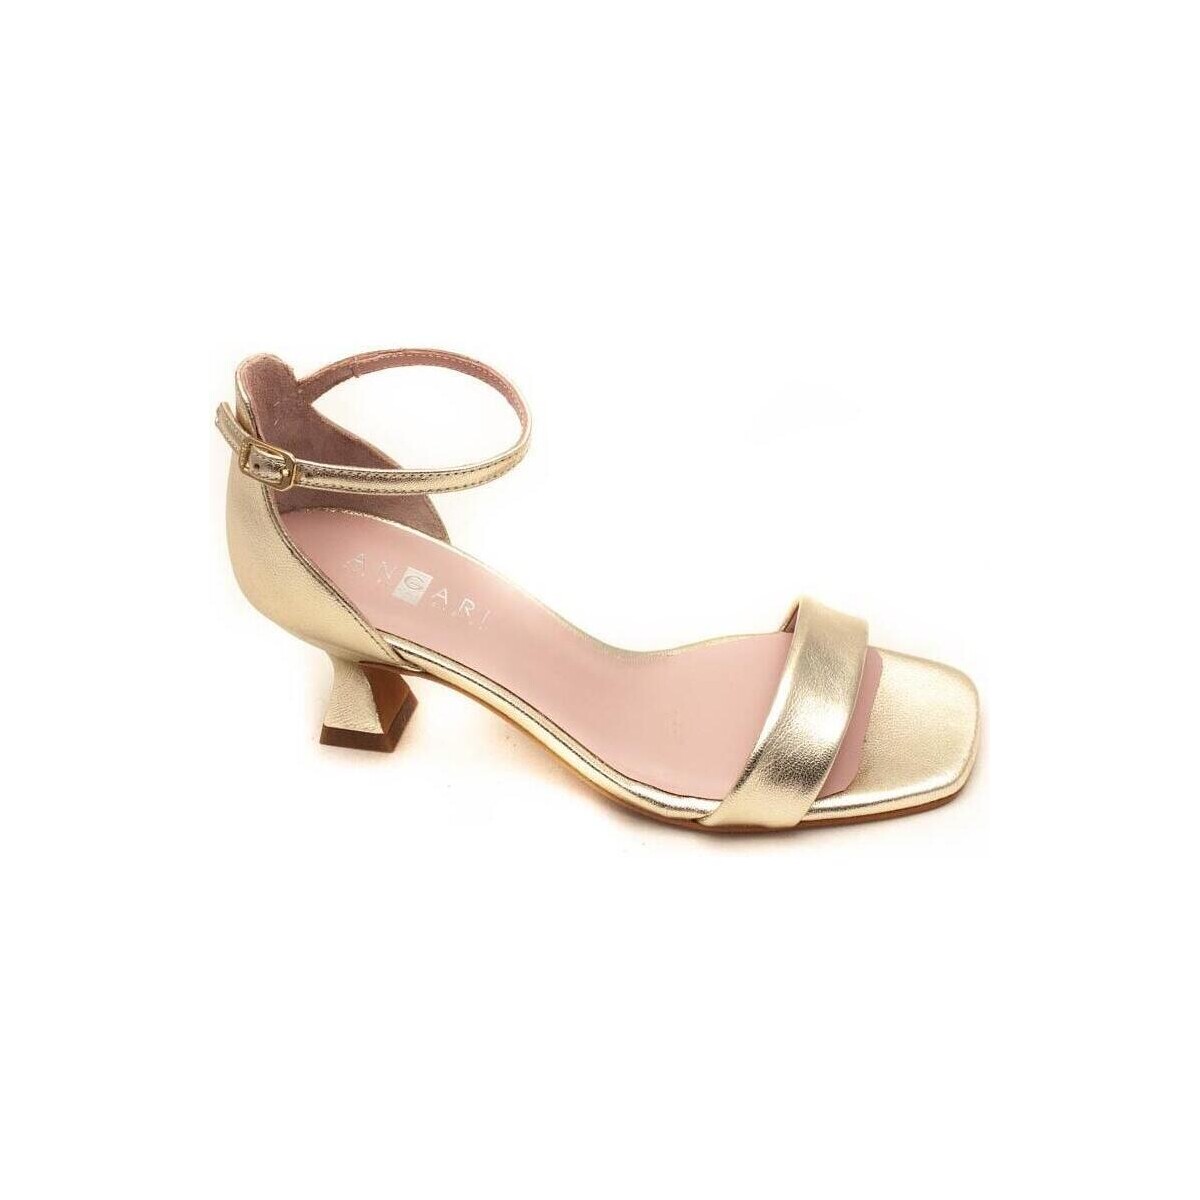 Zapatos Mujer Sandalias Angari 46474-95 Oro